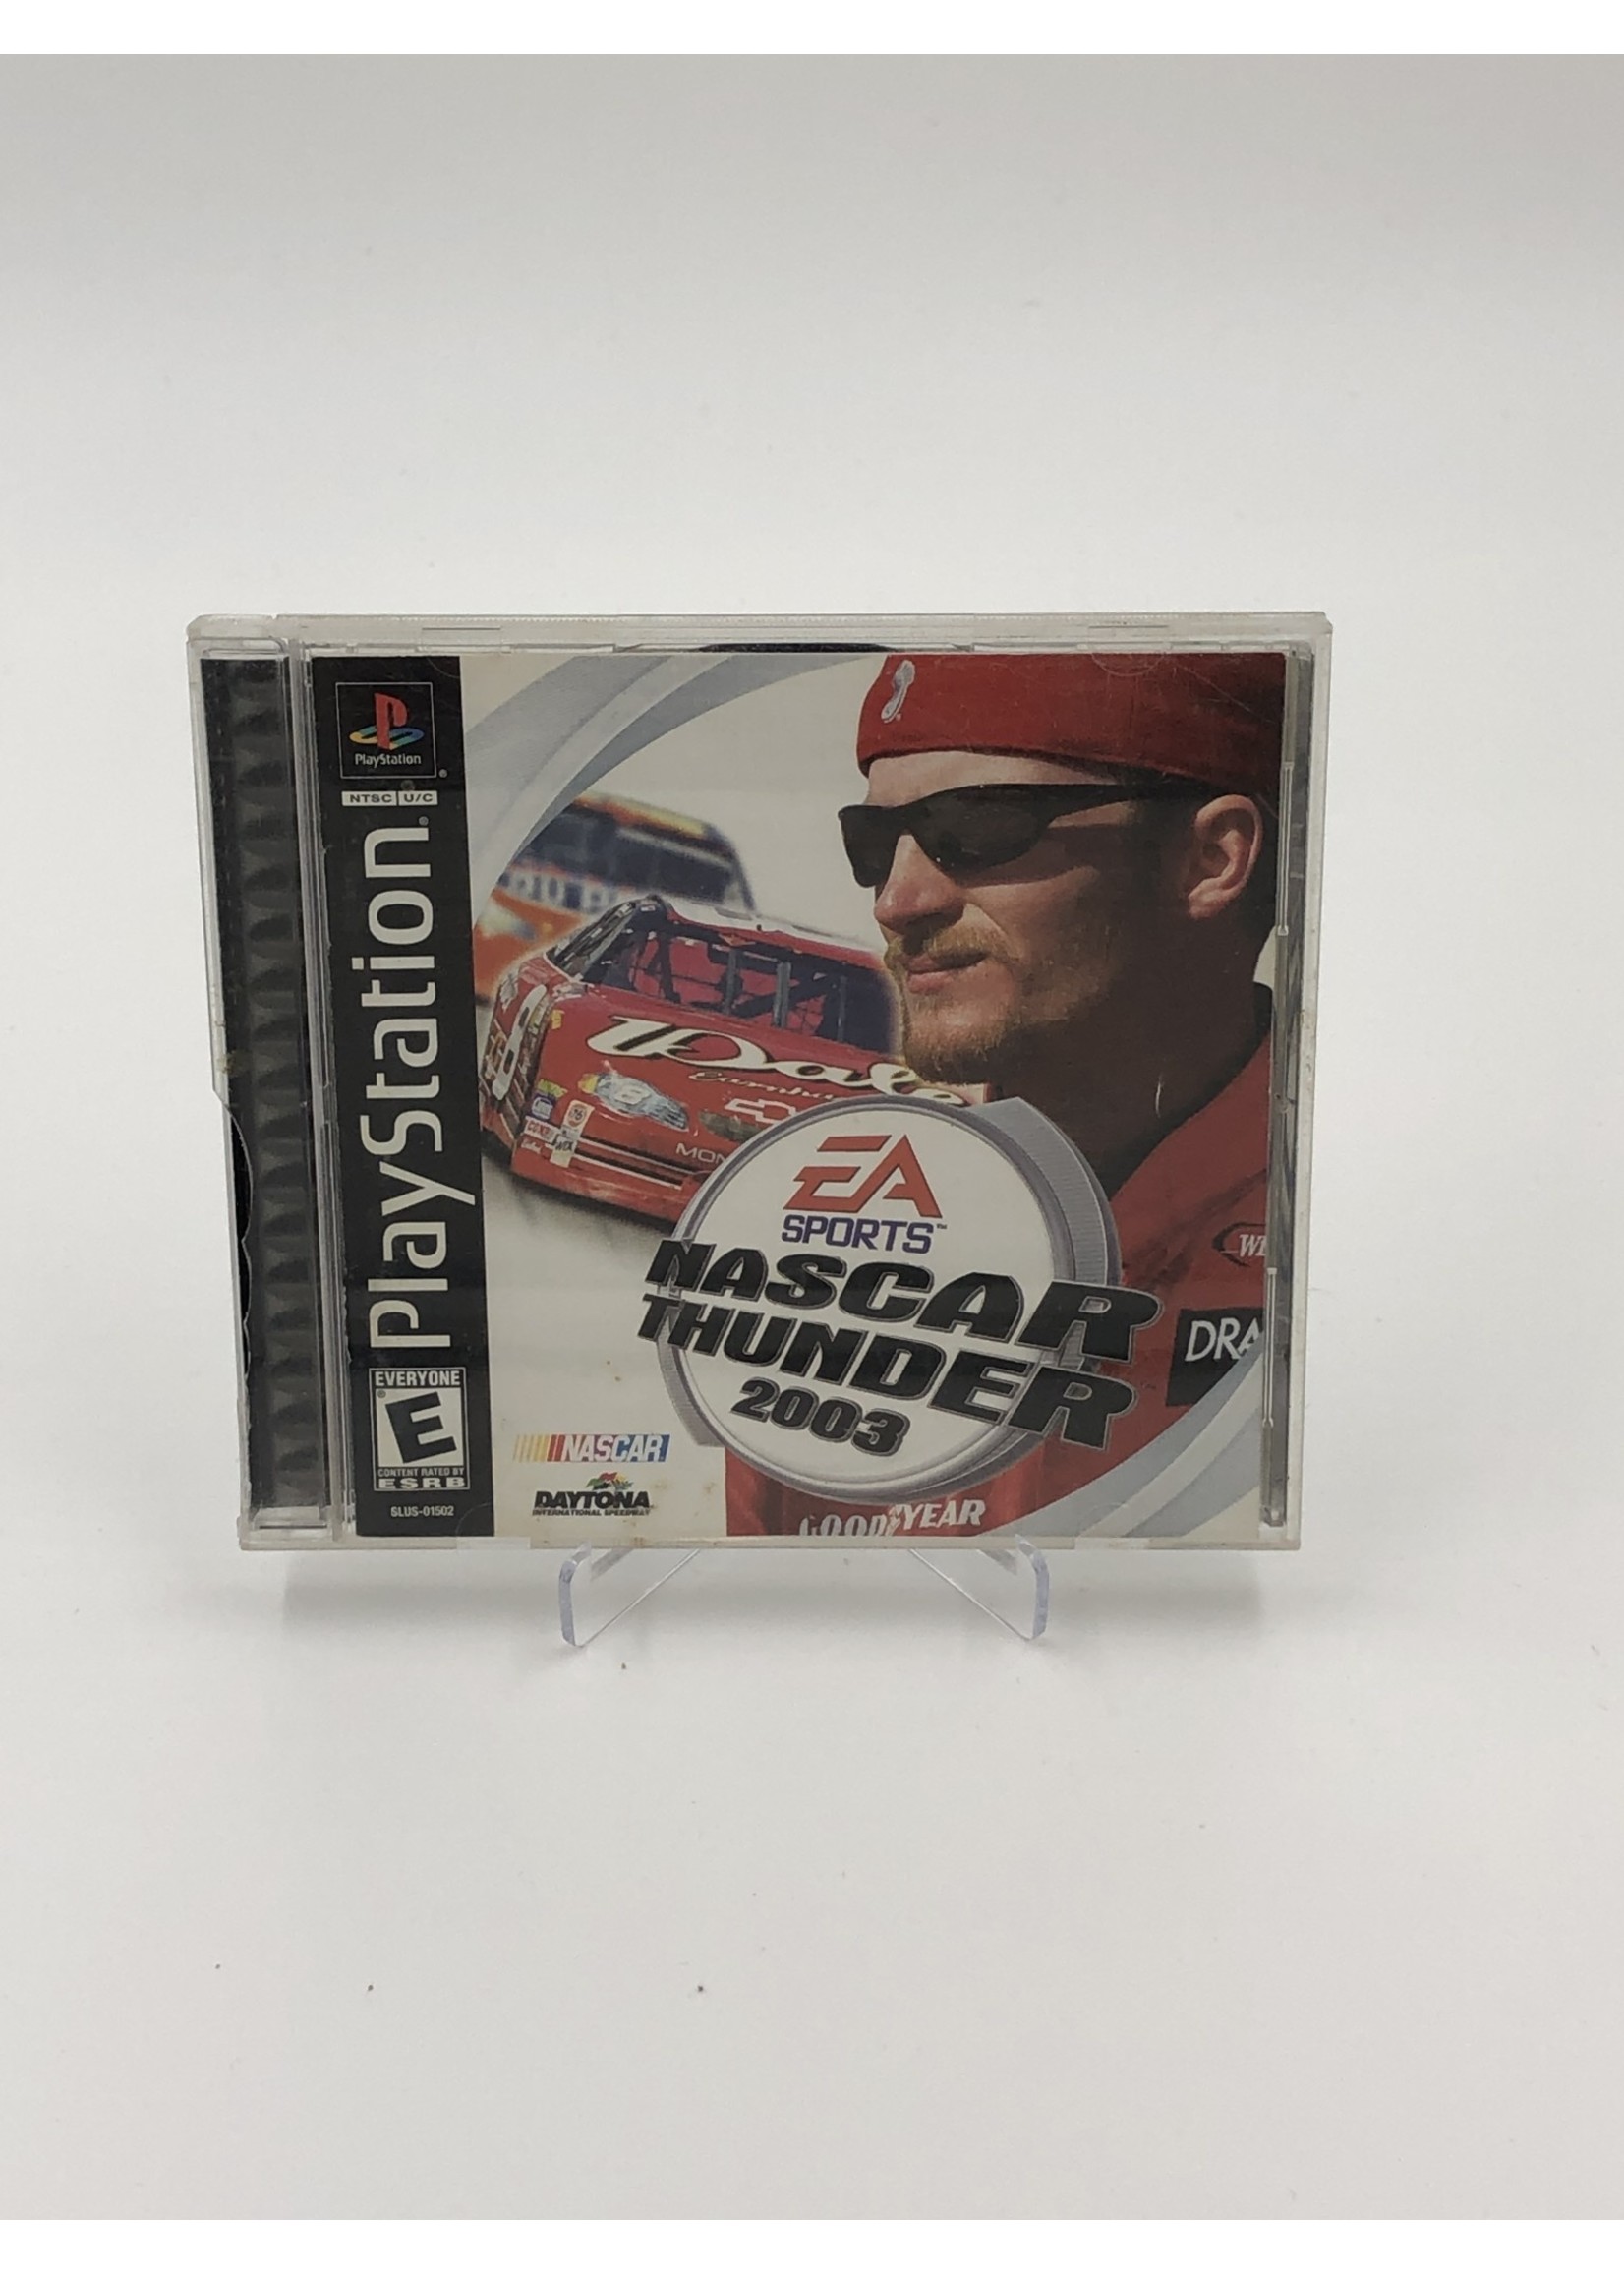 Sony   NASCAR Thunder 2003 - PS